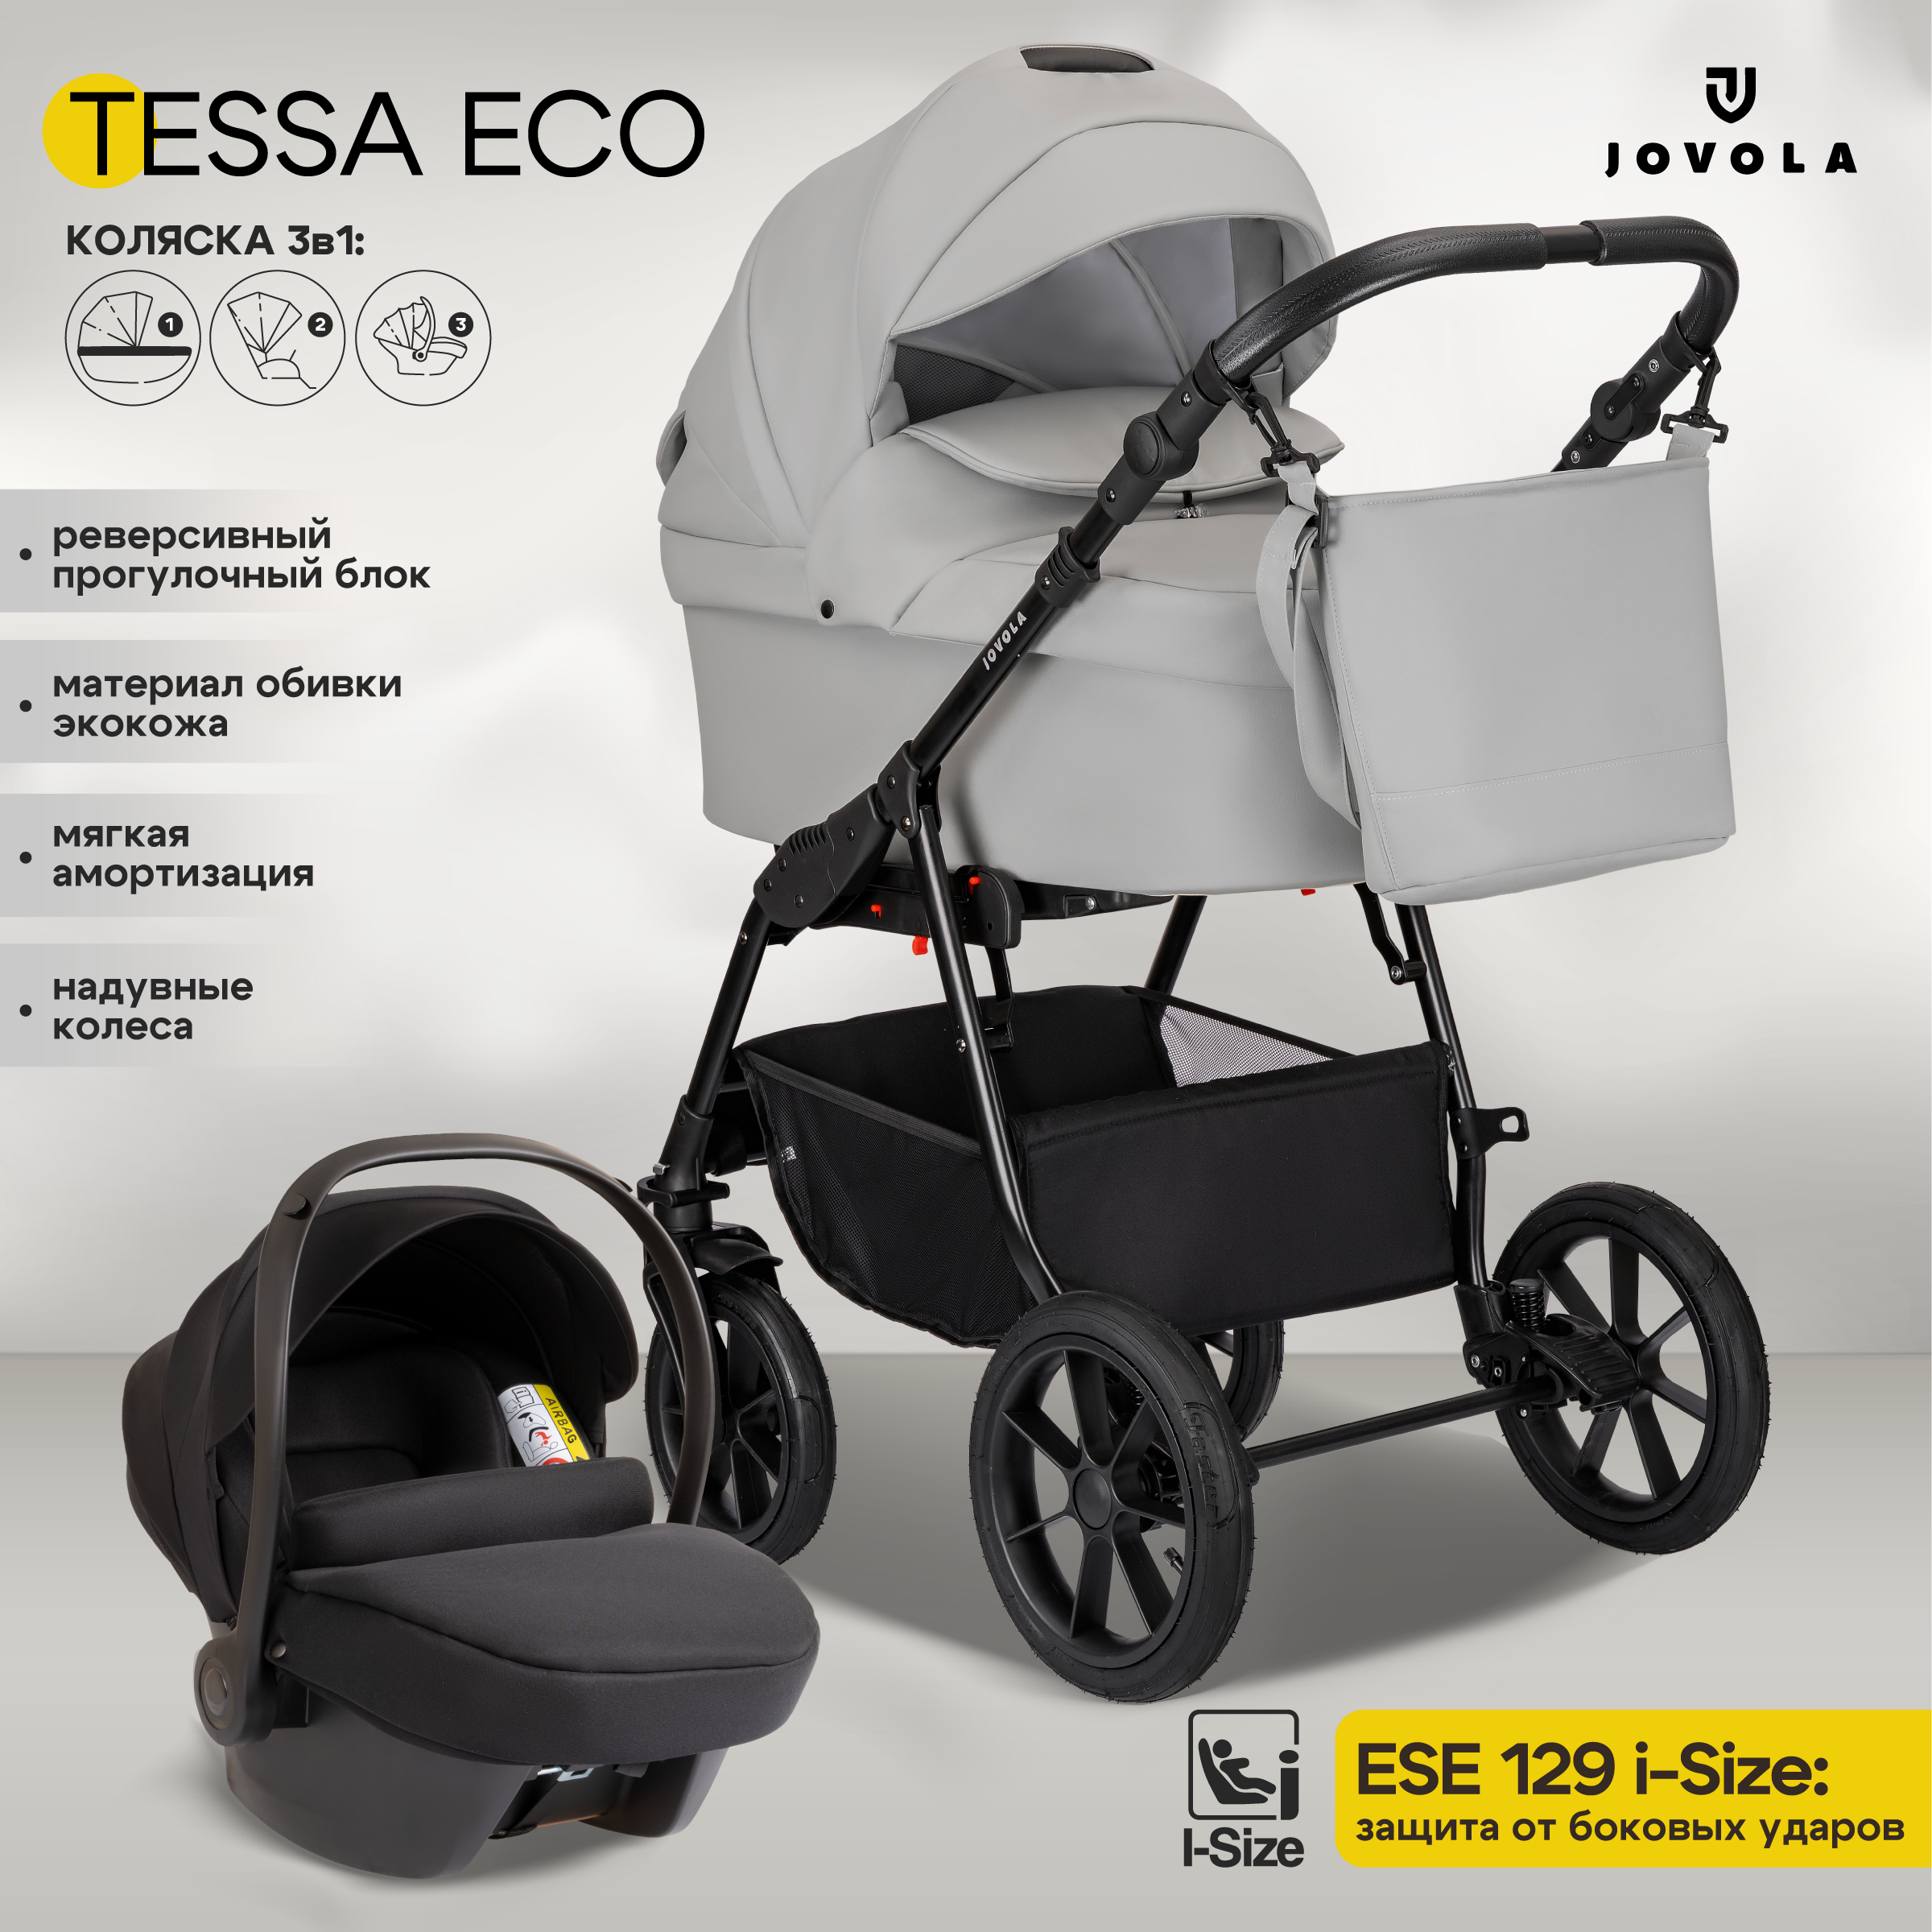 Коляска 3в1 JOVOLA Tessa Eco для новорожденных всесезонная с автолюлькой Te 04 светло серая кожа - фото 1